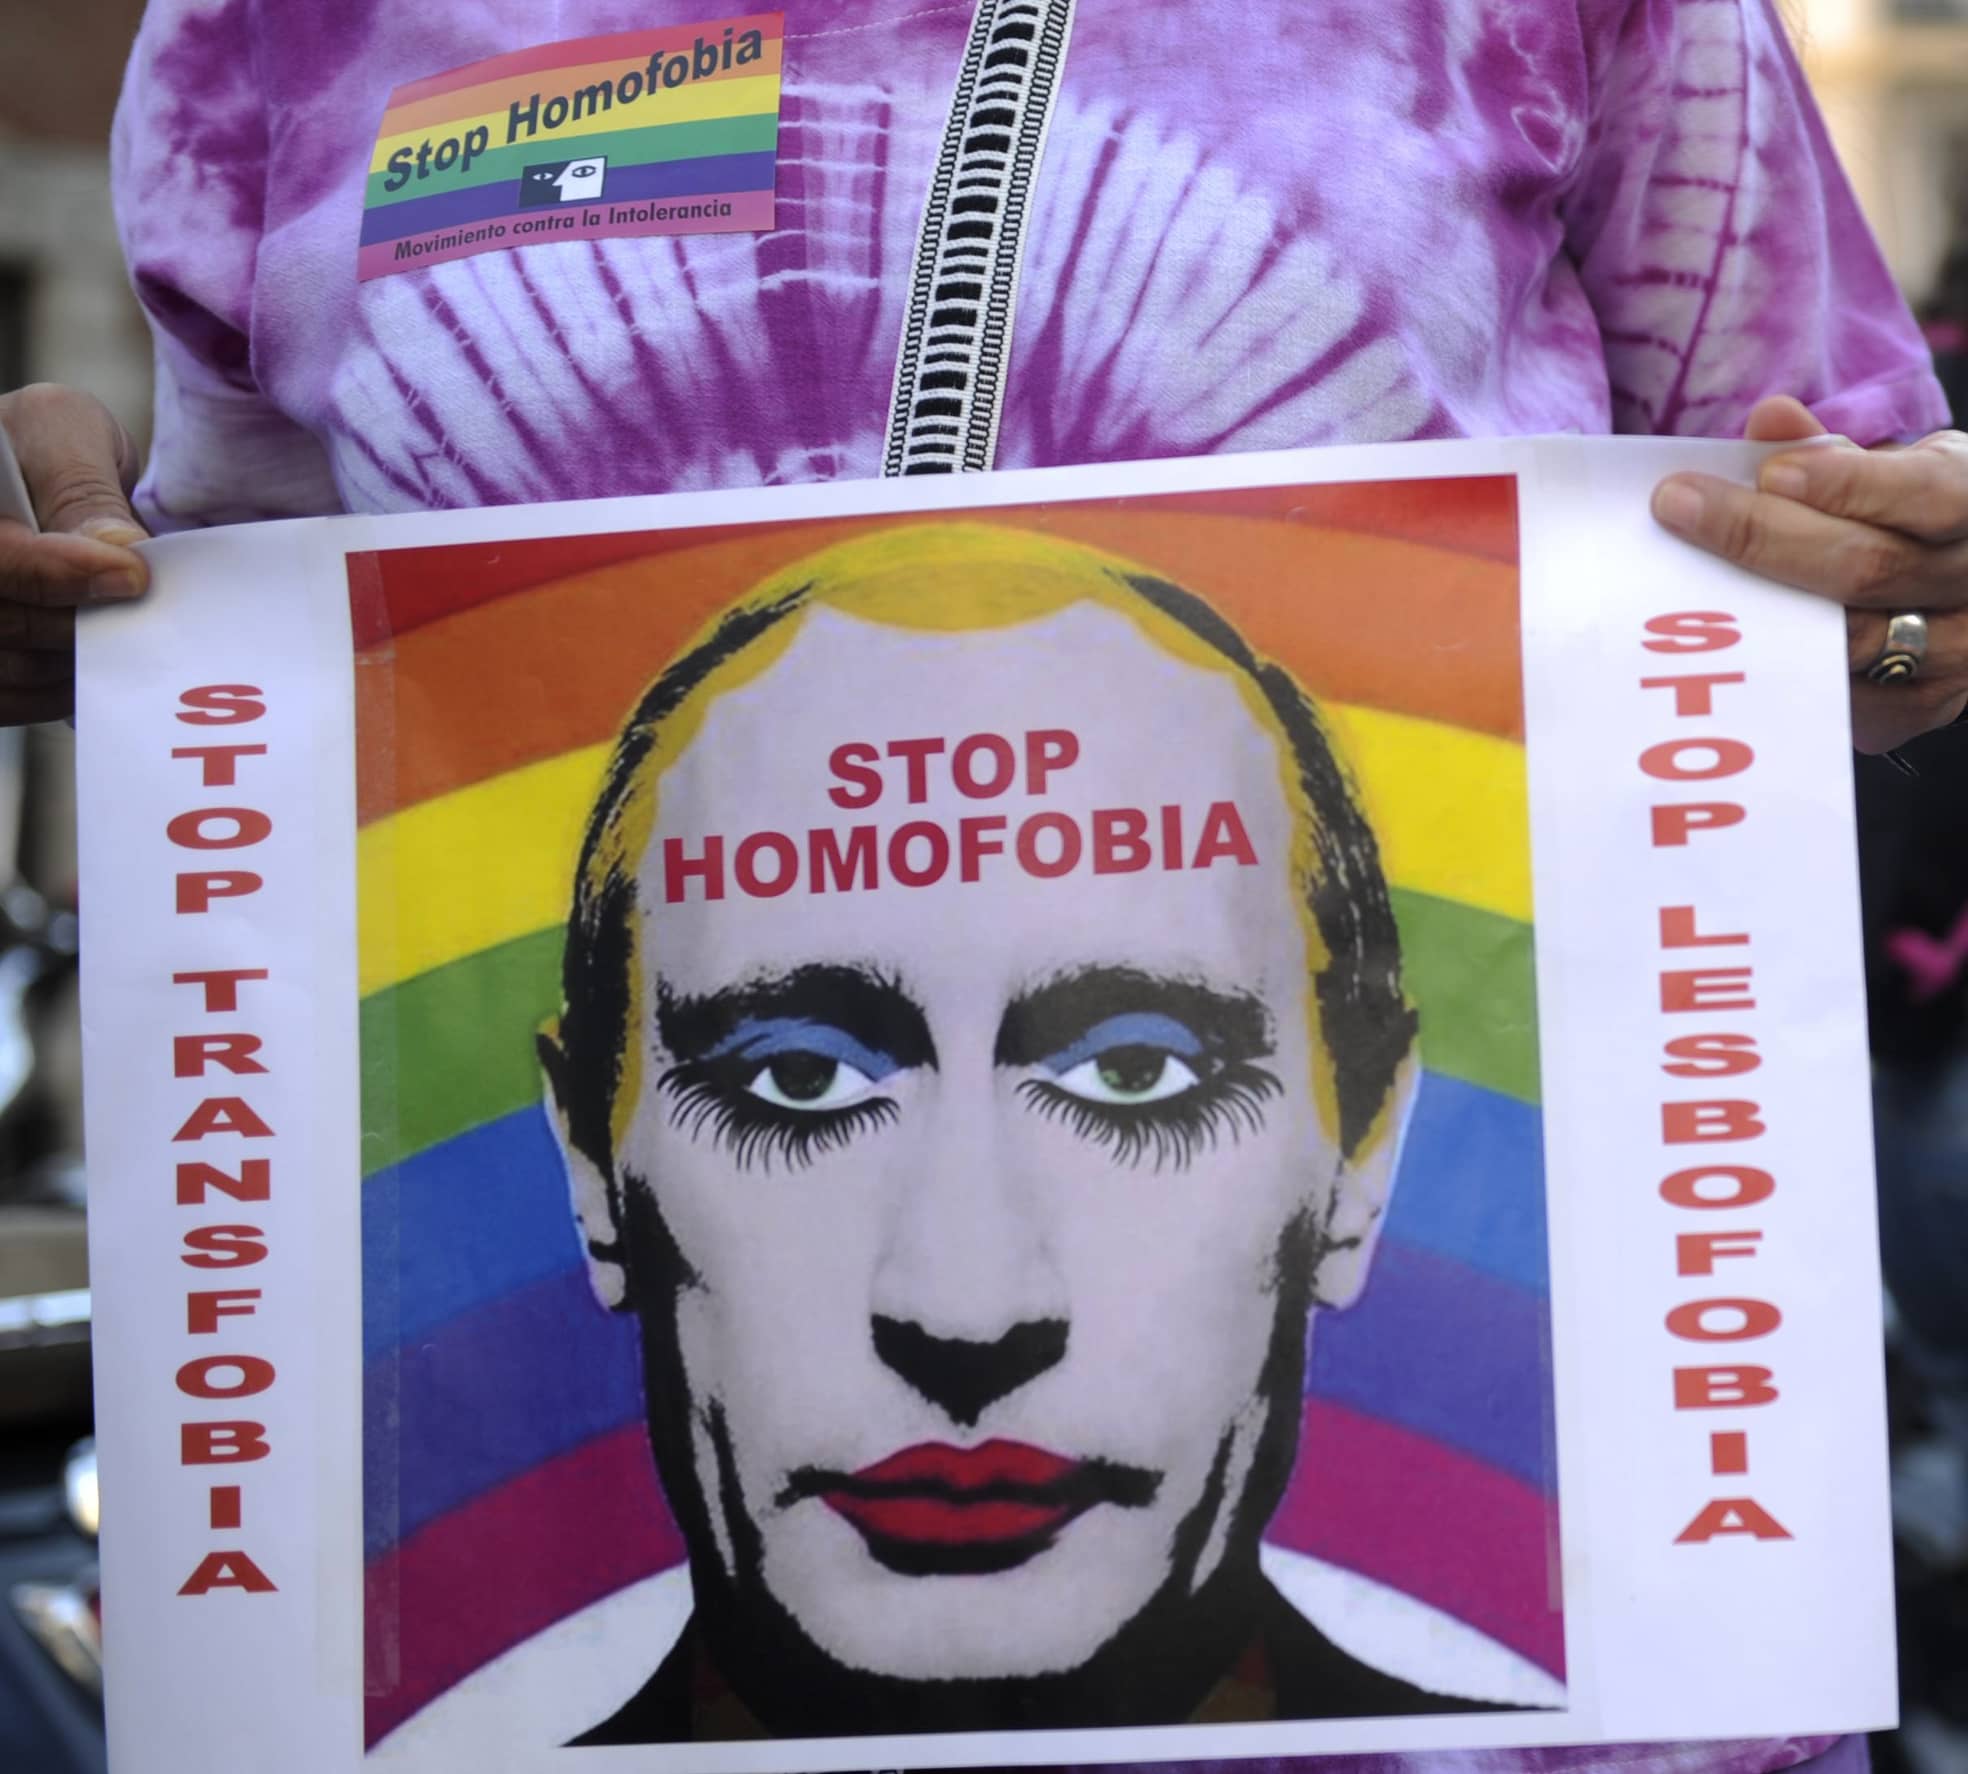 Madrid, Anfang September 2013: Etwa 300 Aktivisten protestieren gegen neue Gesetze und Homophobie in Russland - und auch hier kommt ein Bild von Putin als stark geschminkter Clown zum Einsatz.